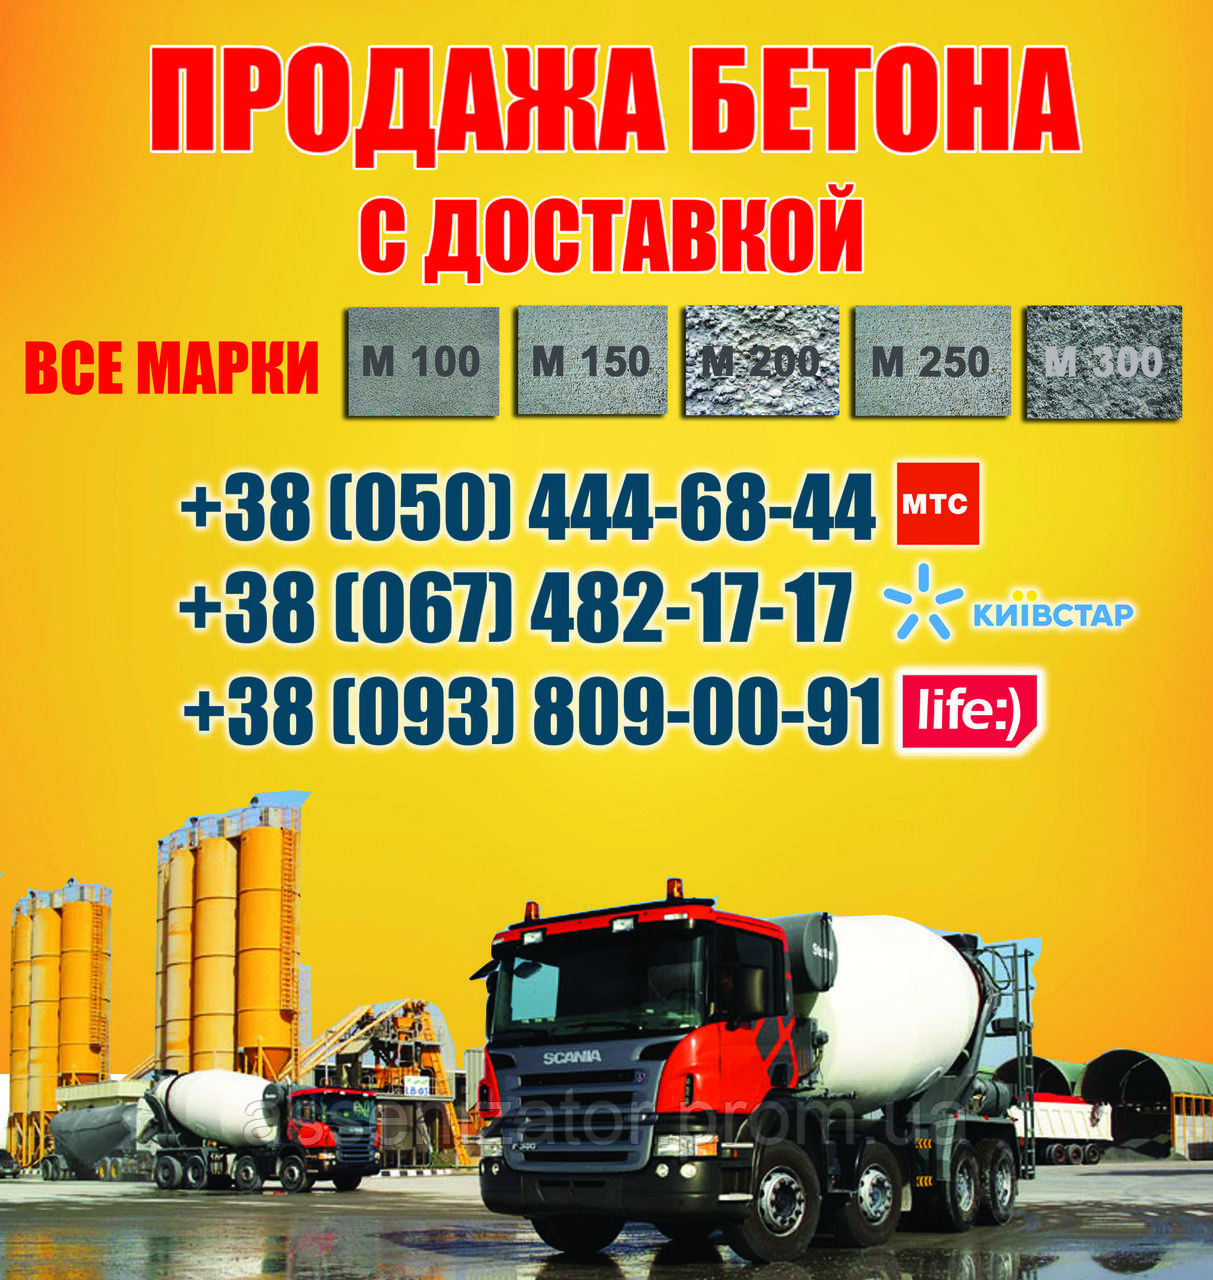 Заказать бетон с доставкой цена московская область куплю бетона мешалка